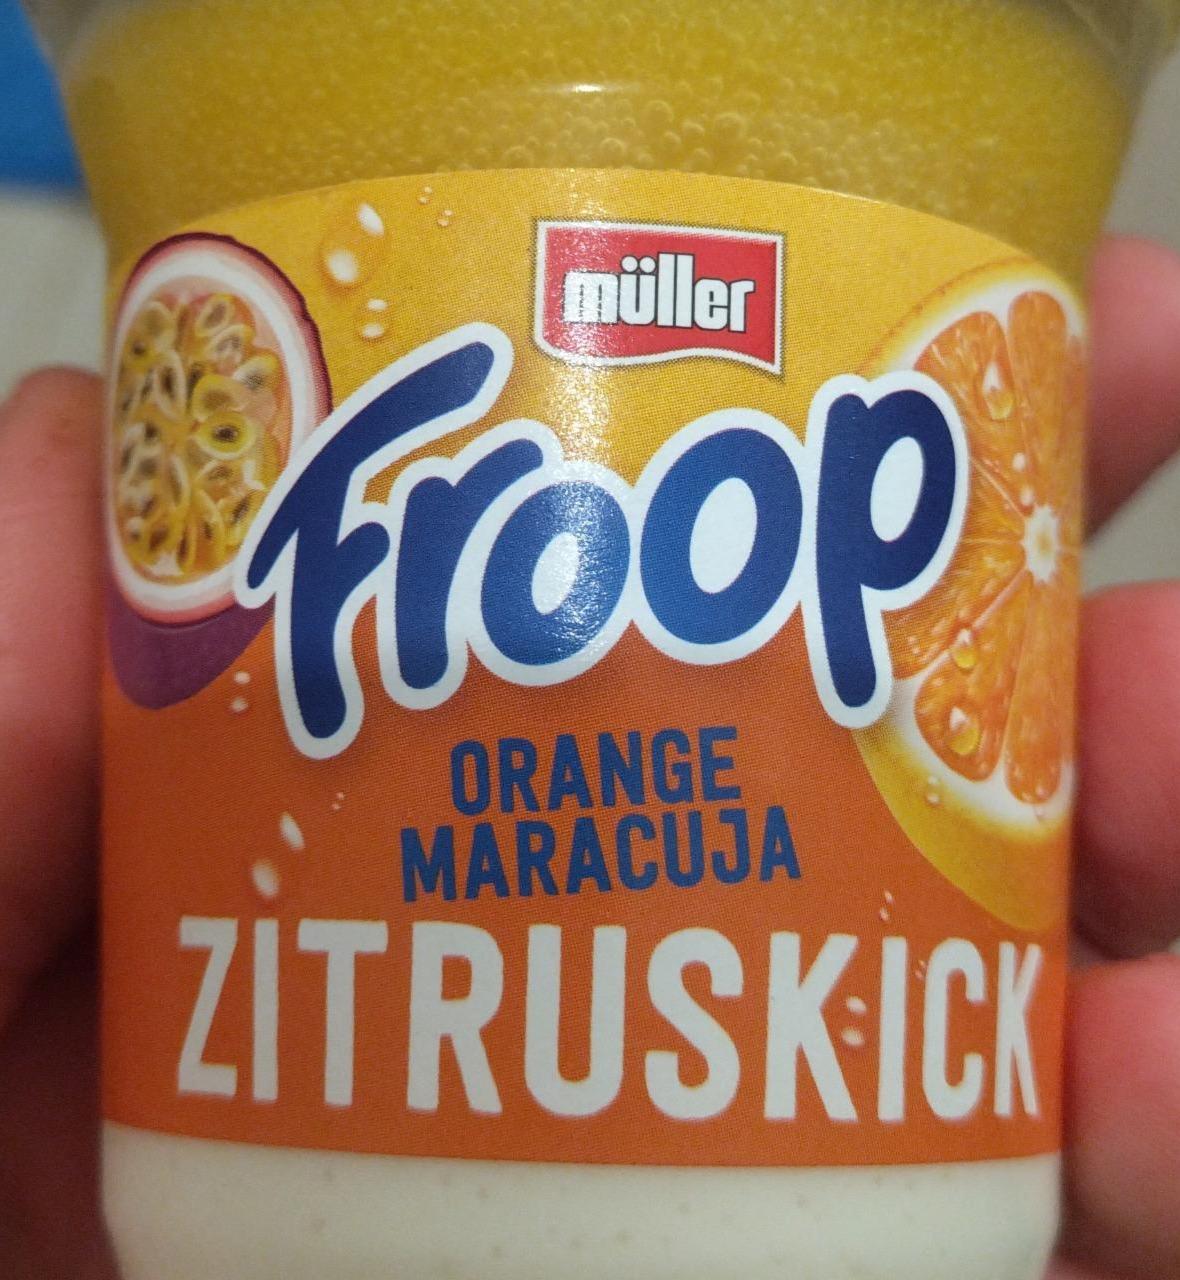 Fotografie - Froop Orange Maracuja Zitruskick Müller